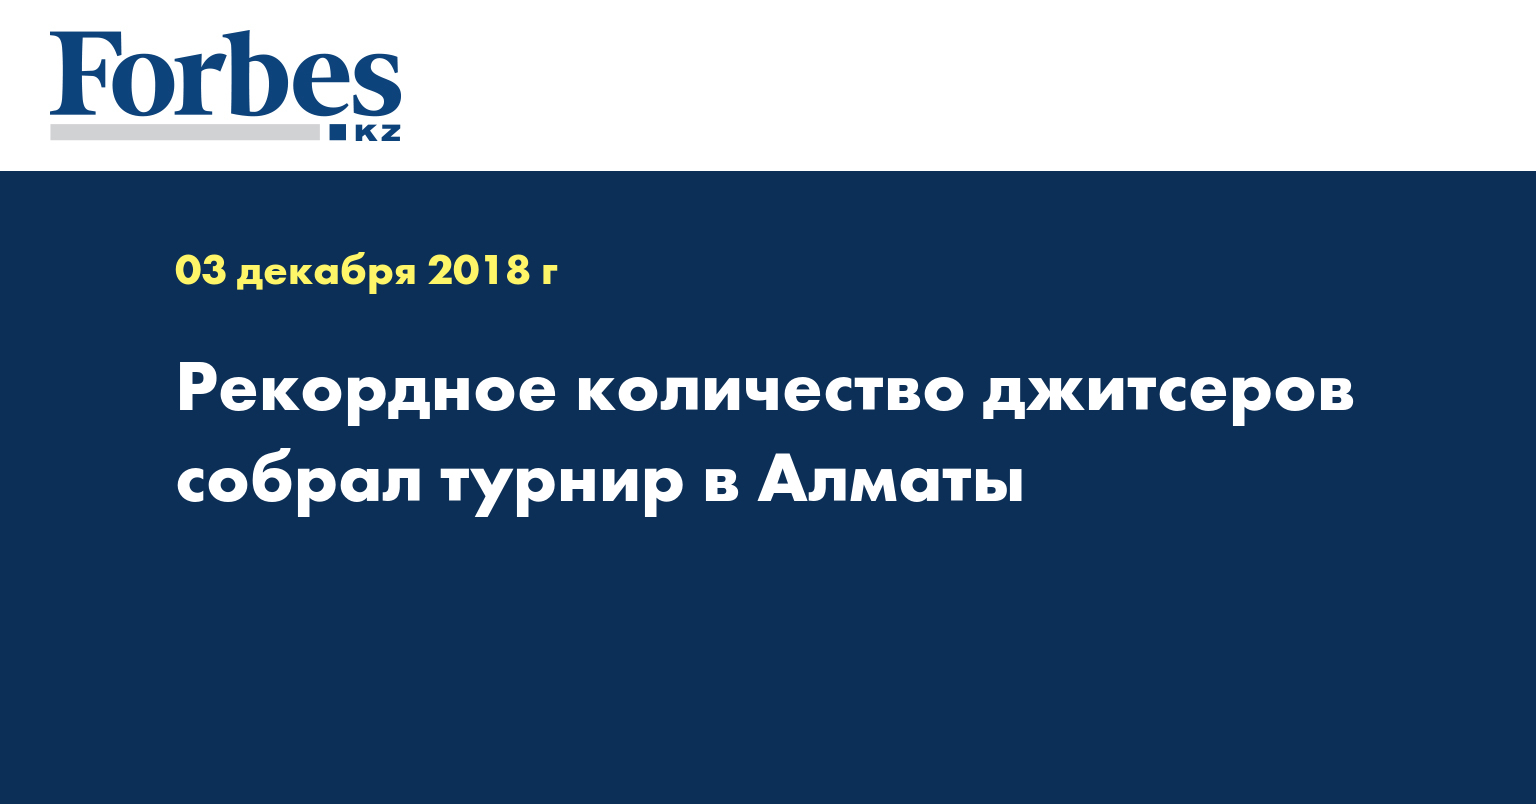 Рекордное количество джитсеров собрал турнир в Алматы  